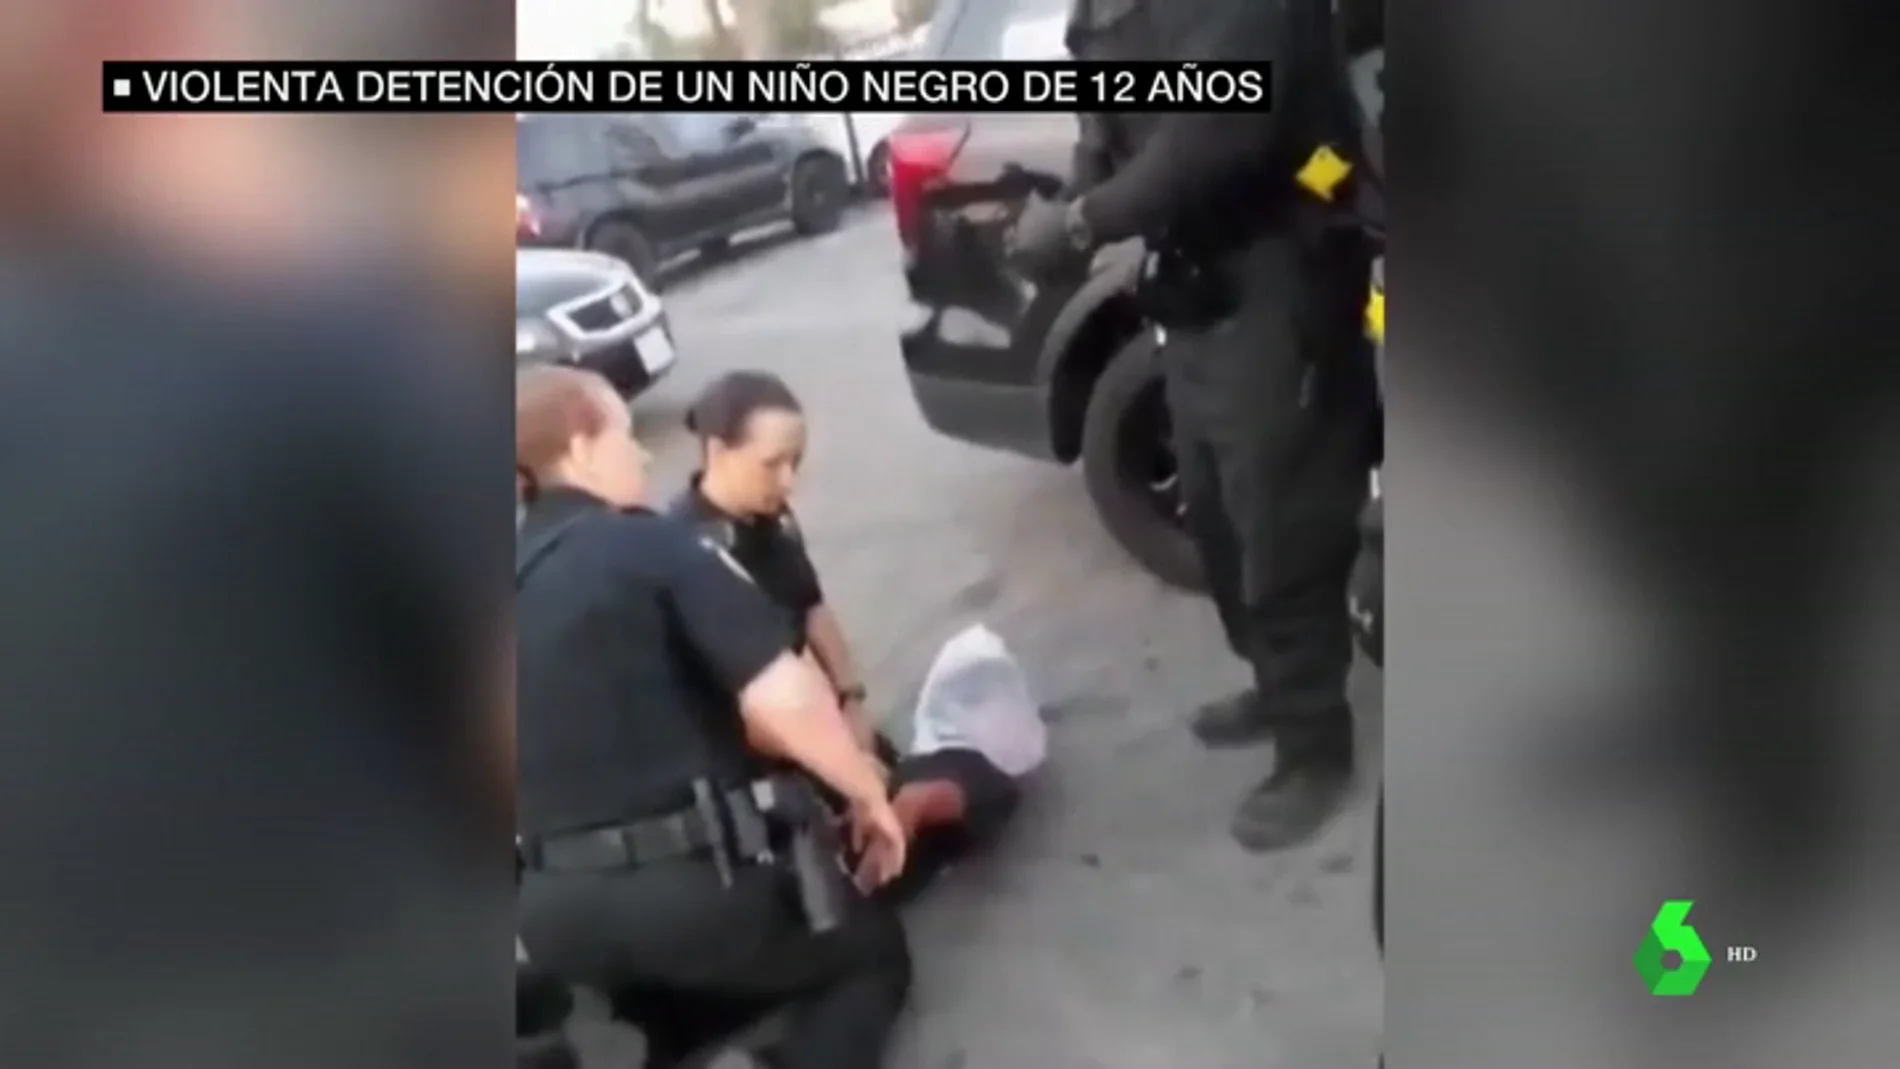 Brutal arresto a un niño negro en EEUU: le reducen, clavan la rodilla en su espalda y le ponen una bolsa en la cabeza